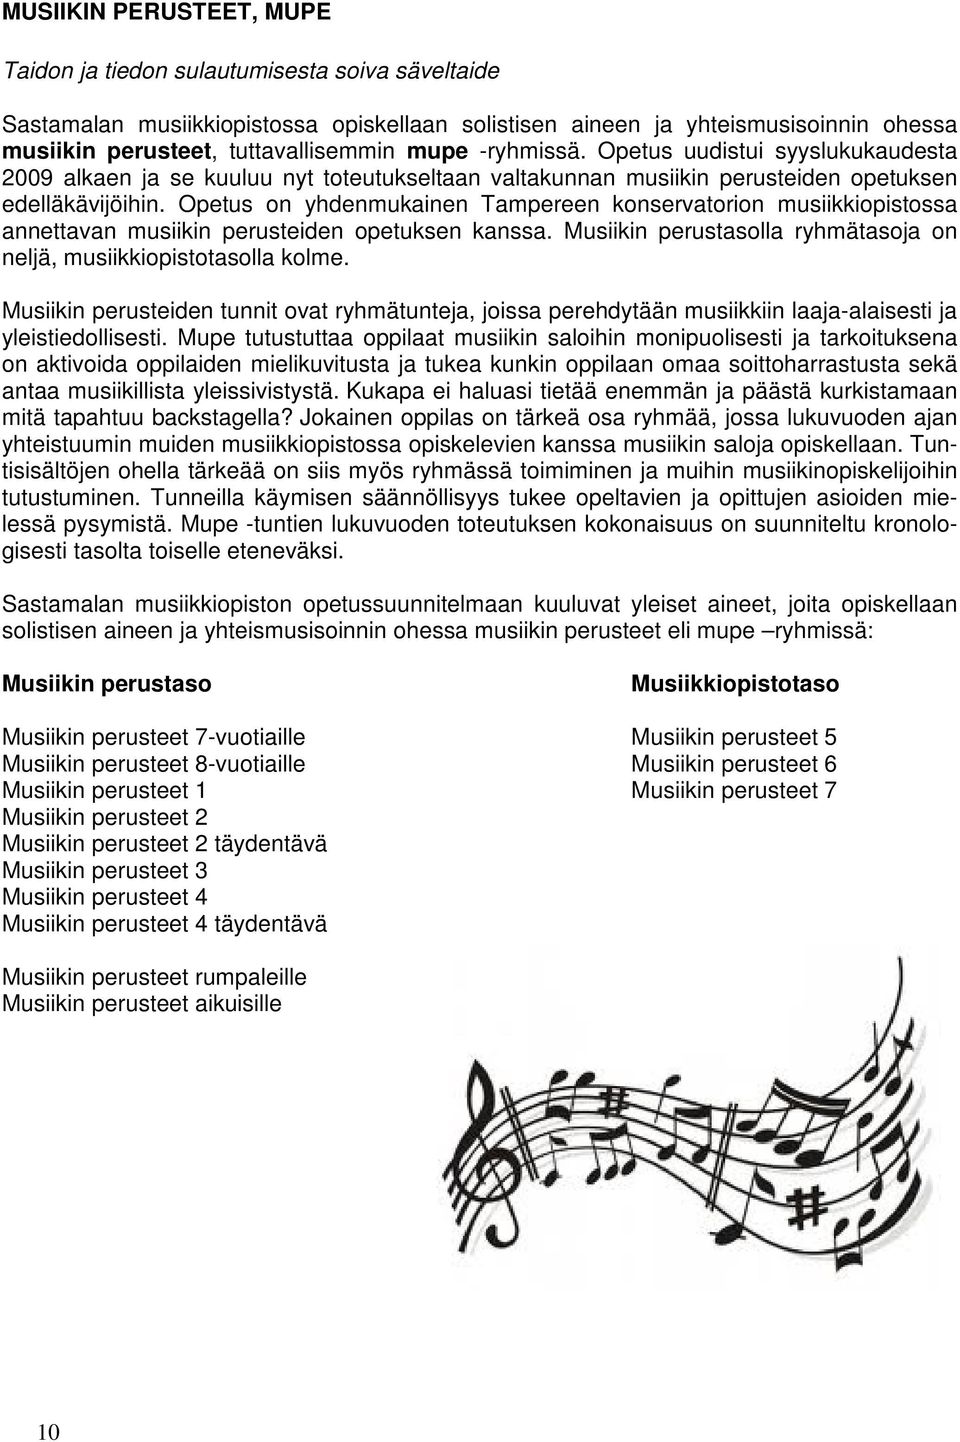 Opetus on yhdenmukainen Tampereen konservatorion musiikkiopistossa annettavan musiikin perusteiden opetuksen kanssa. Musiikin perustasolla ryhmätasoja on neljä, musiikkiopistotasolla kolme.